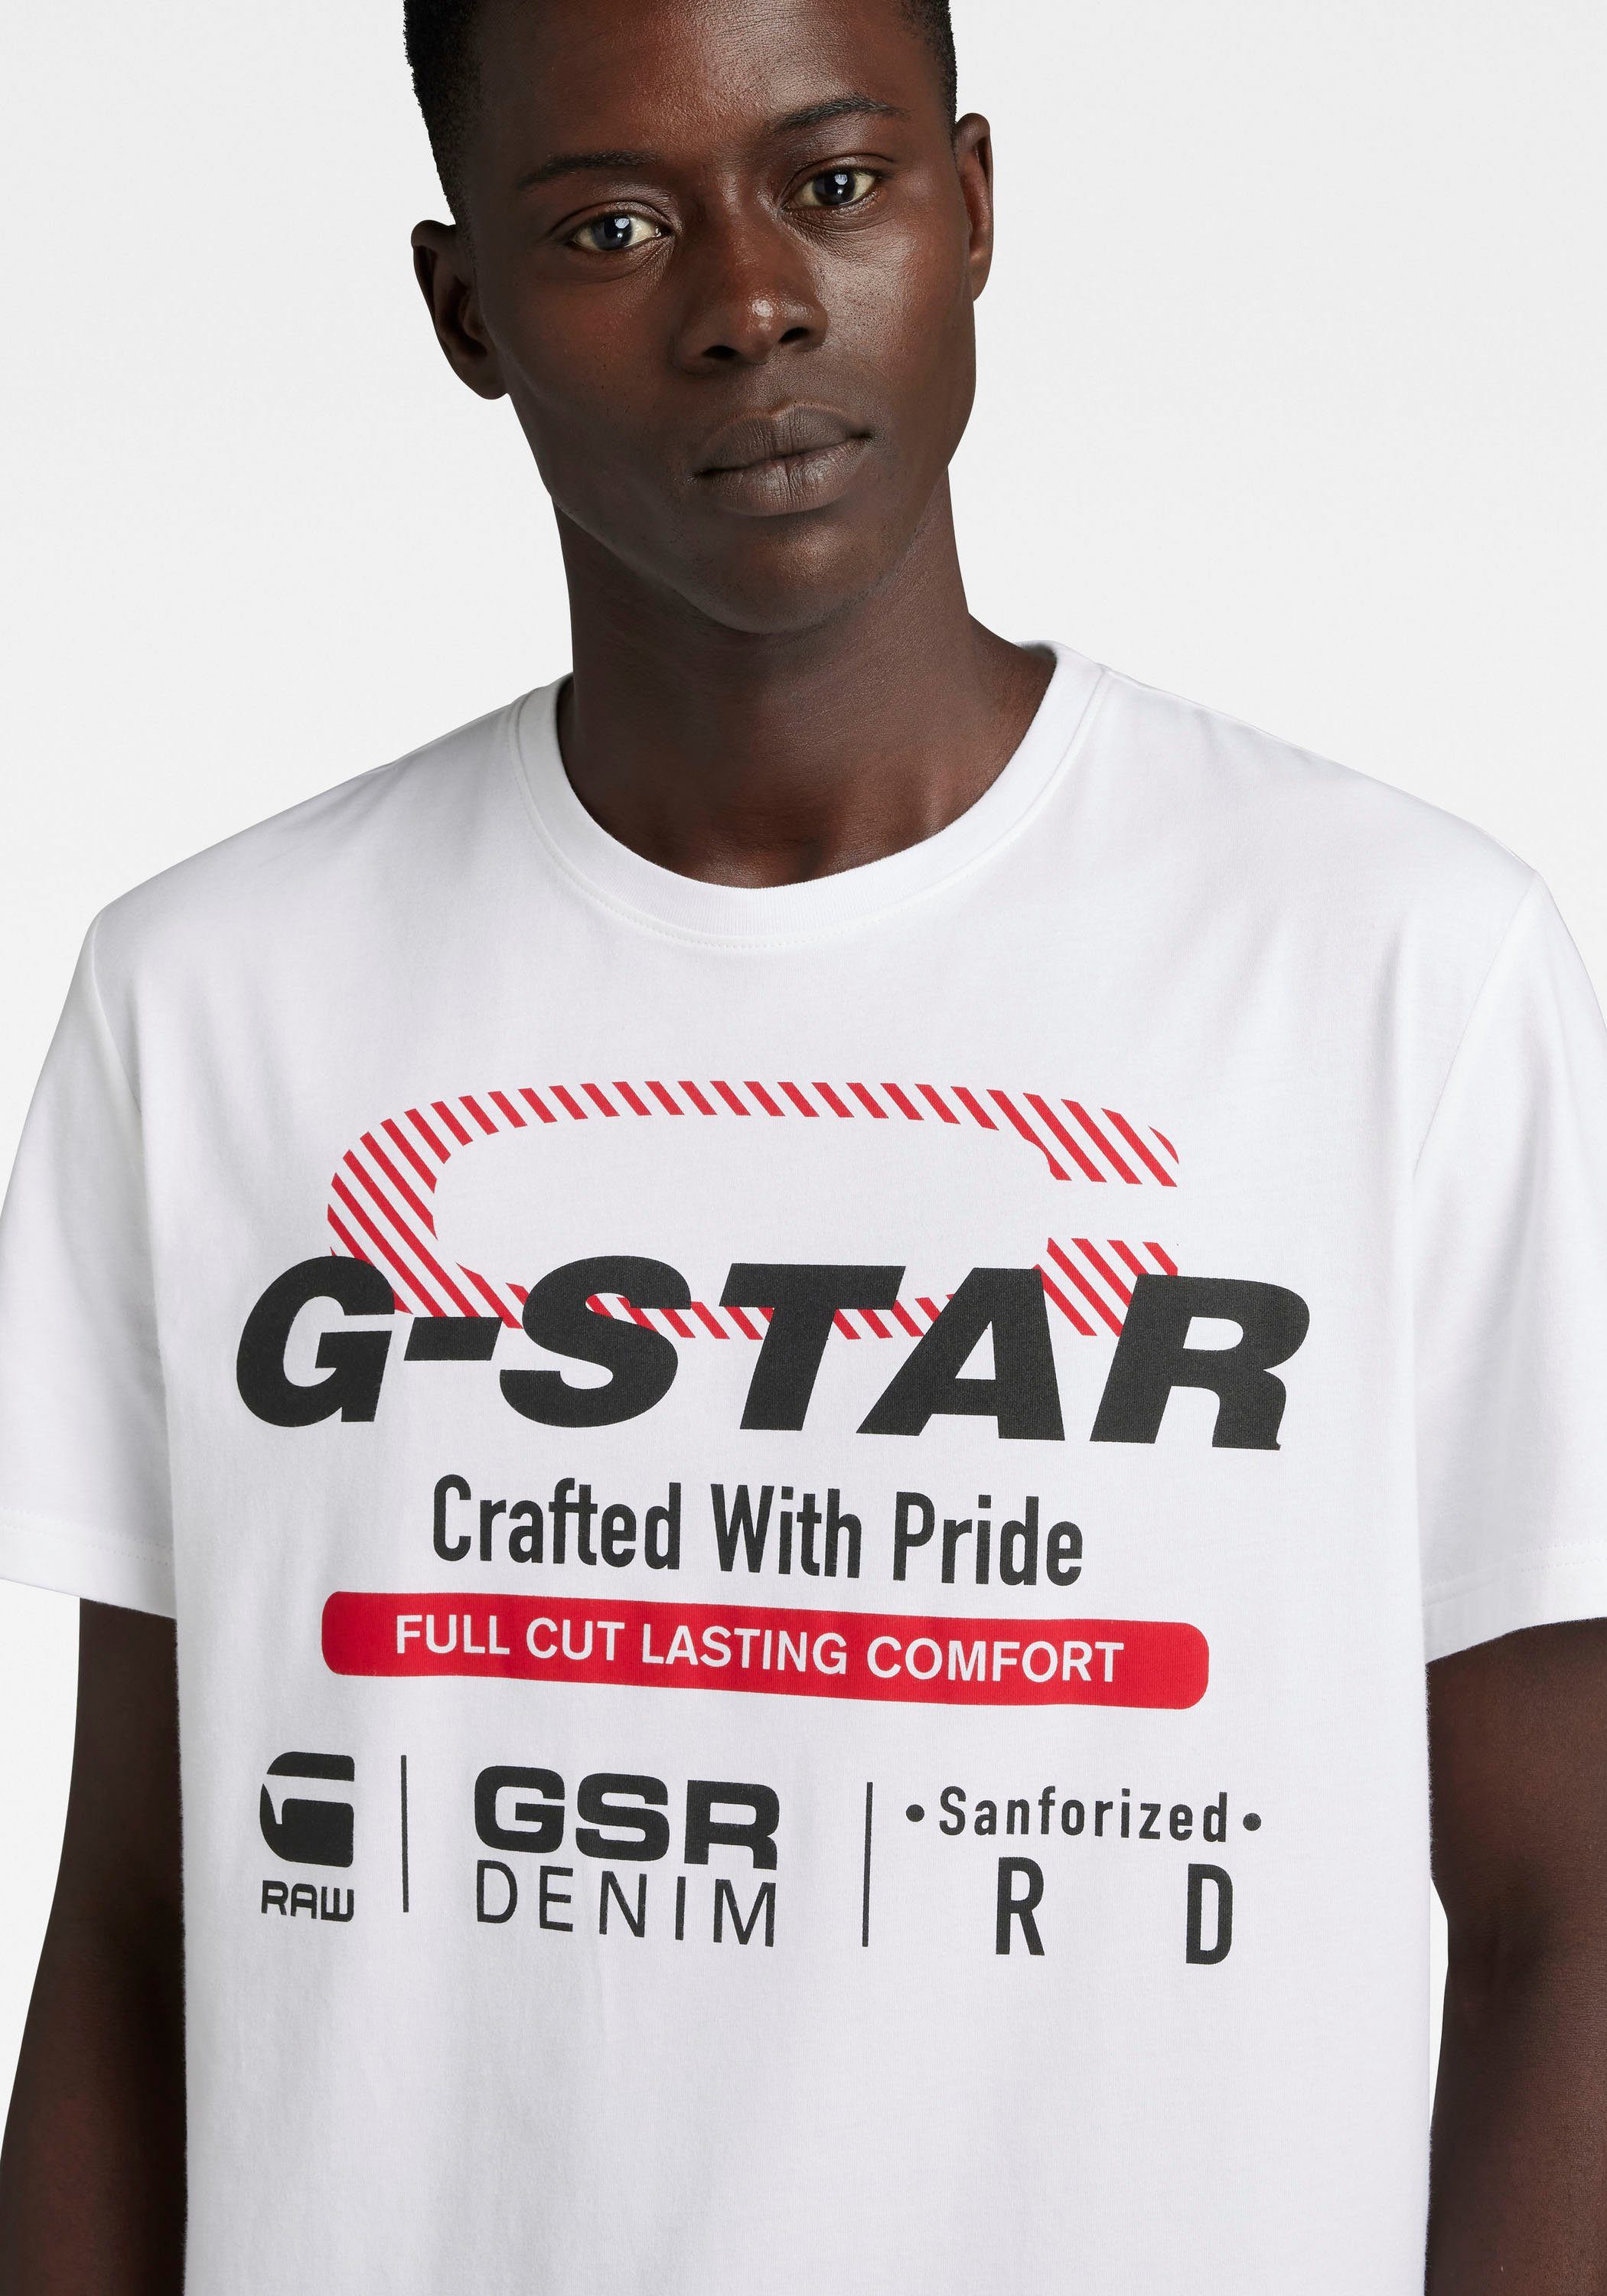 RAW T-Shirt skool G-Star originals Old